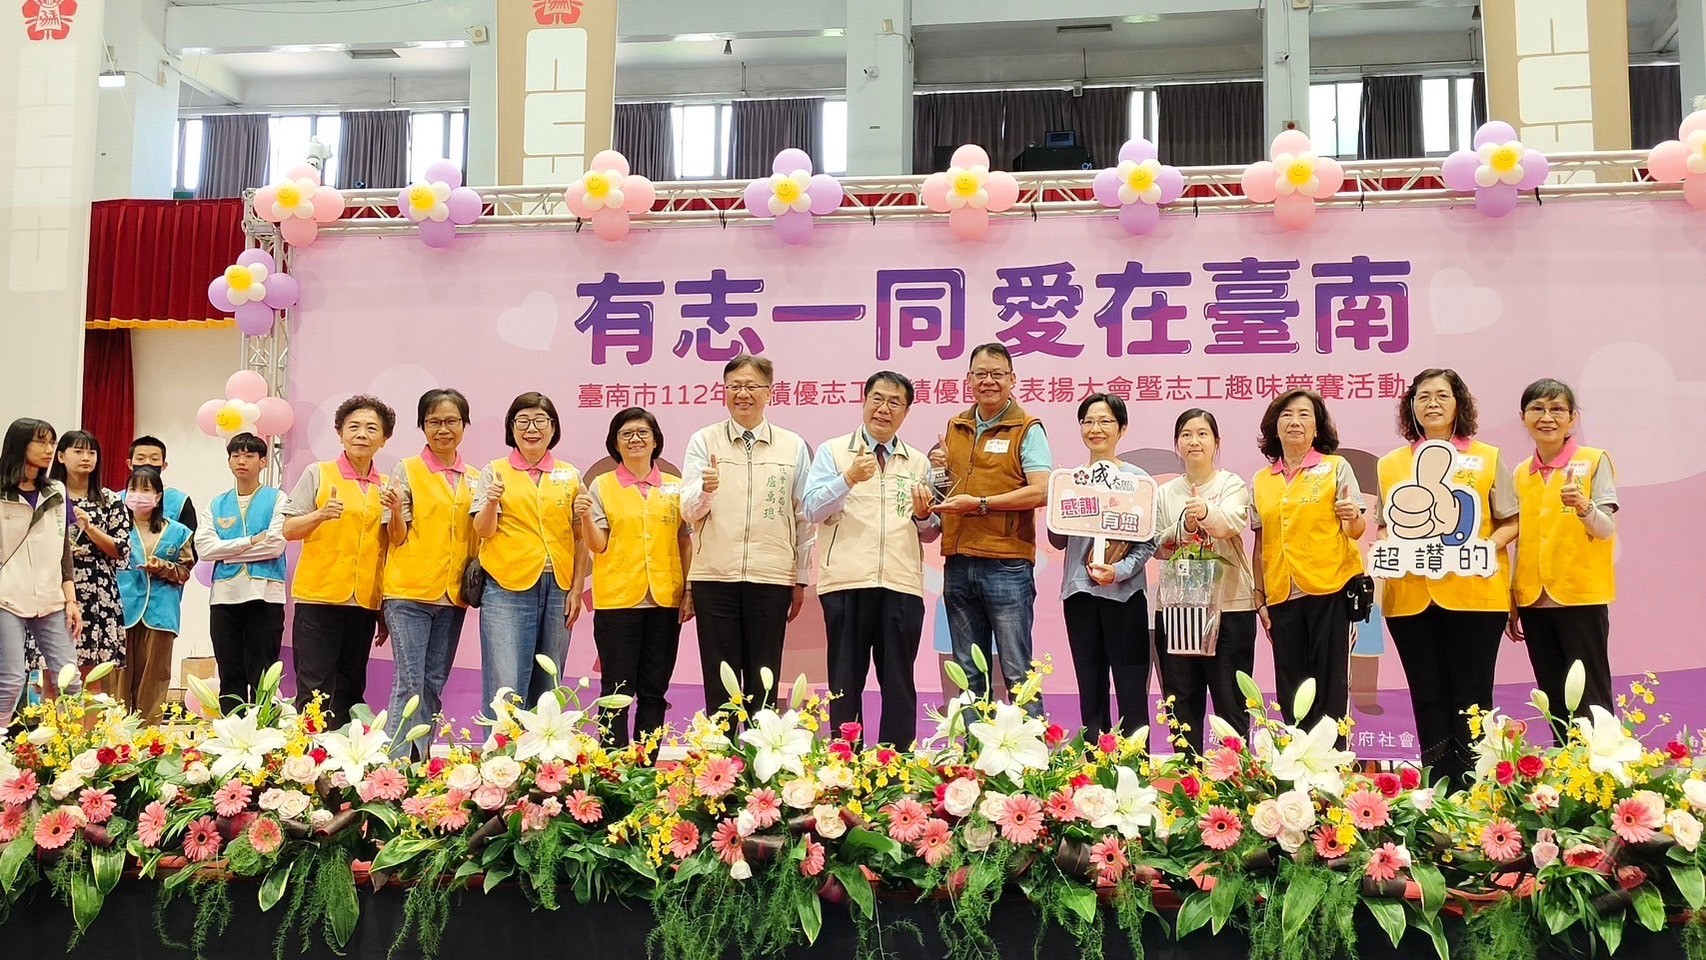 本院榮獲臺南市112年度績優團隊